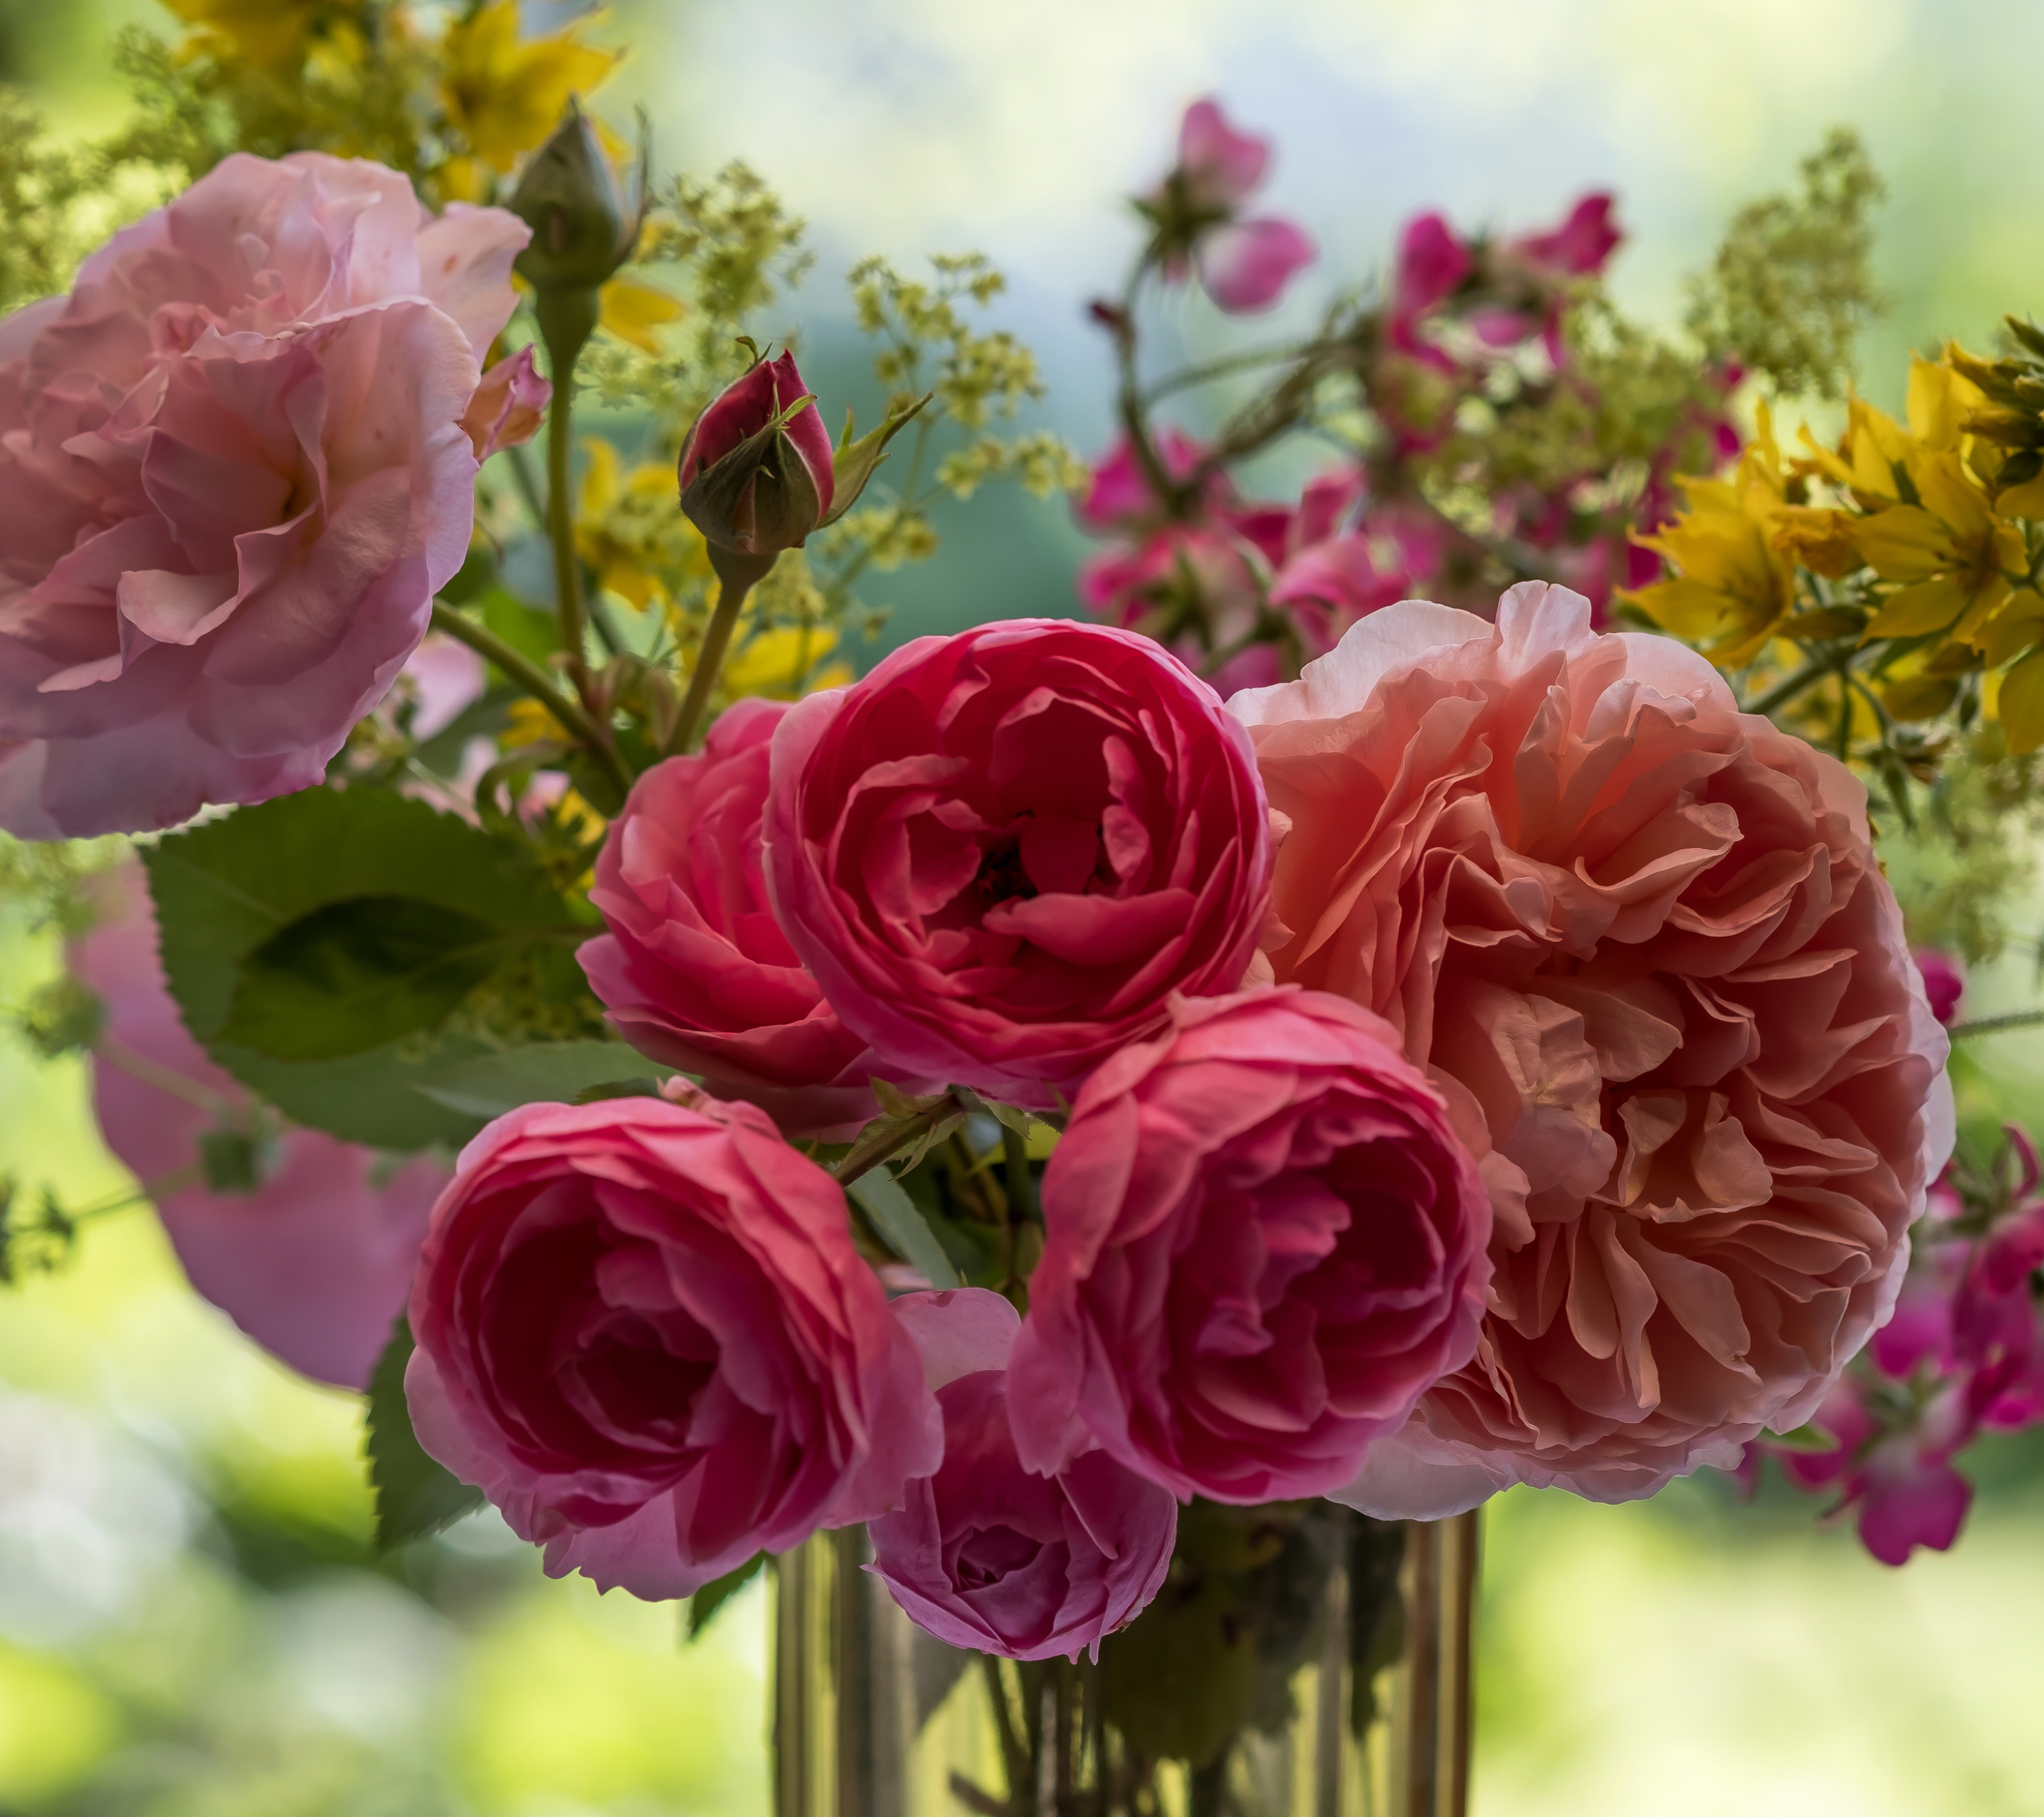 Скачать обои бесплатно Цветок, Роза, Ваза, Земля/природа, Розовый Цветок, Флауэрсы картинка на рабочий стол ПК